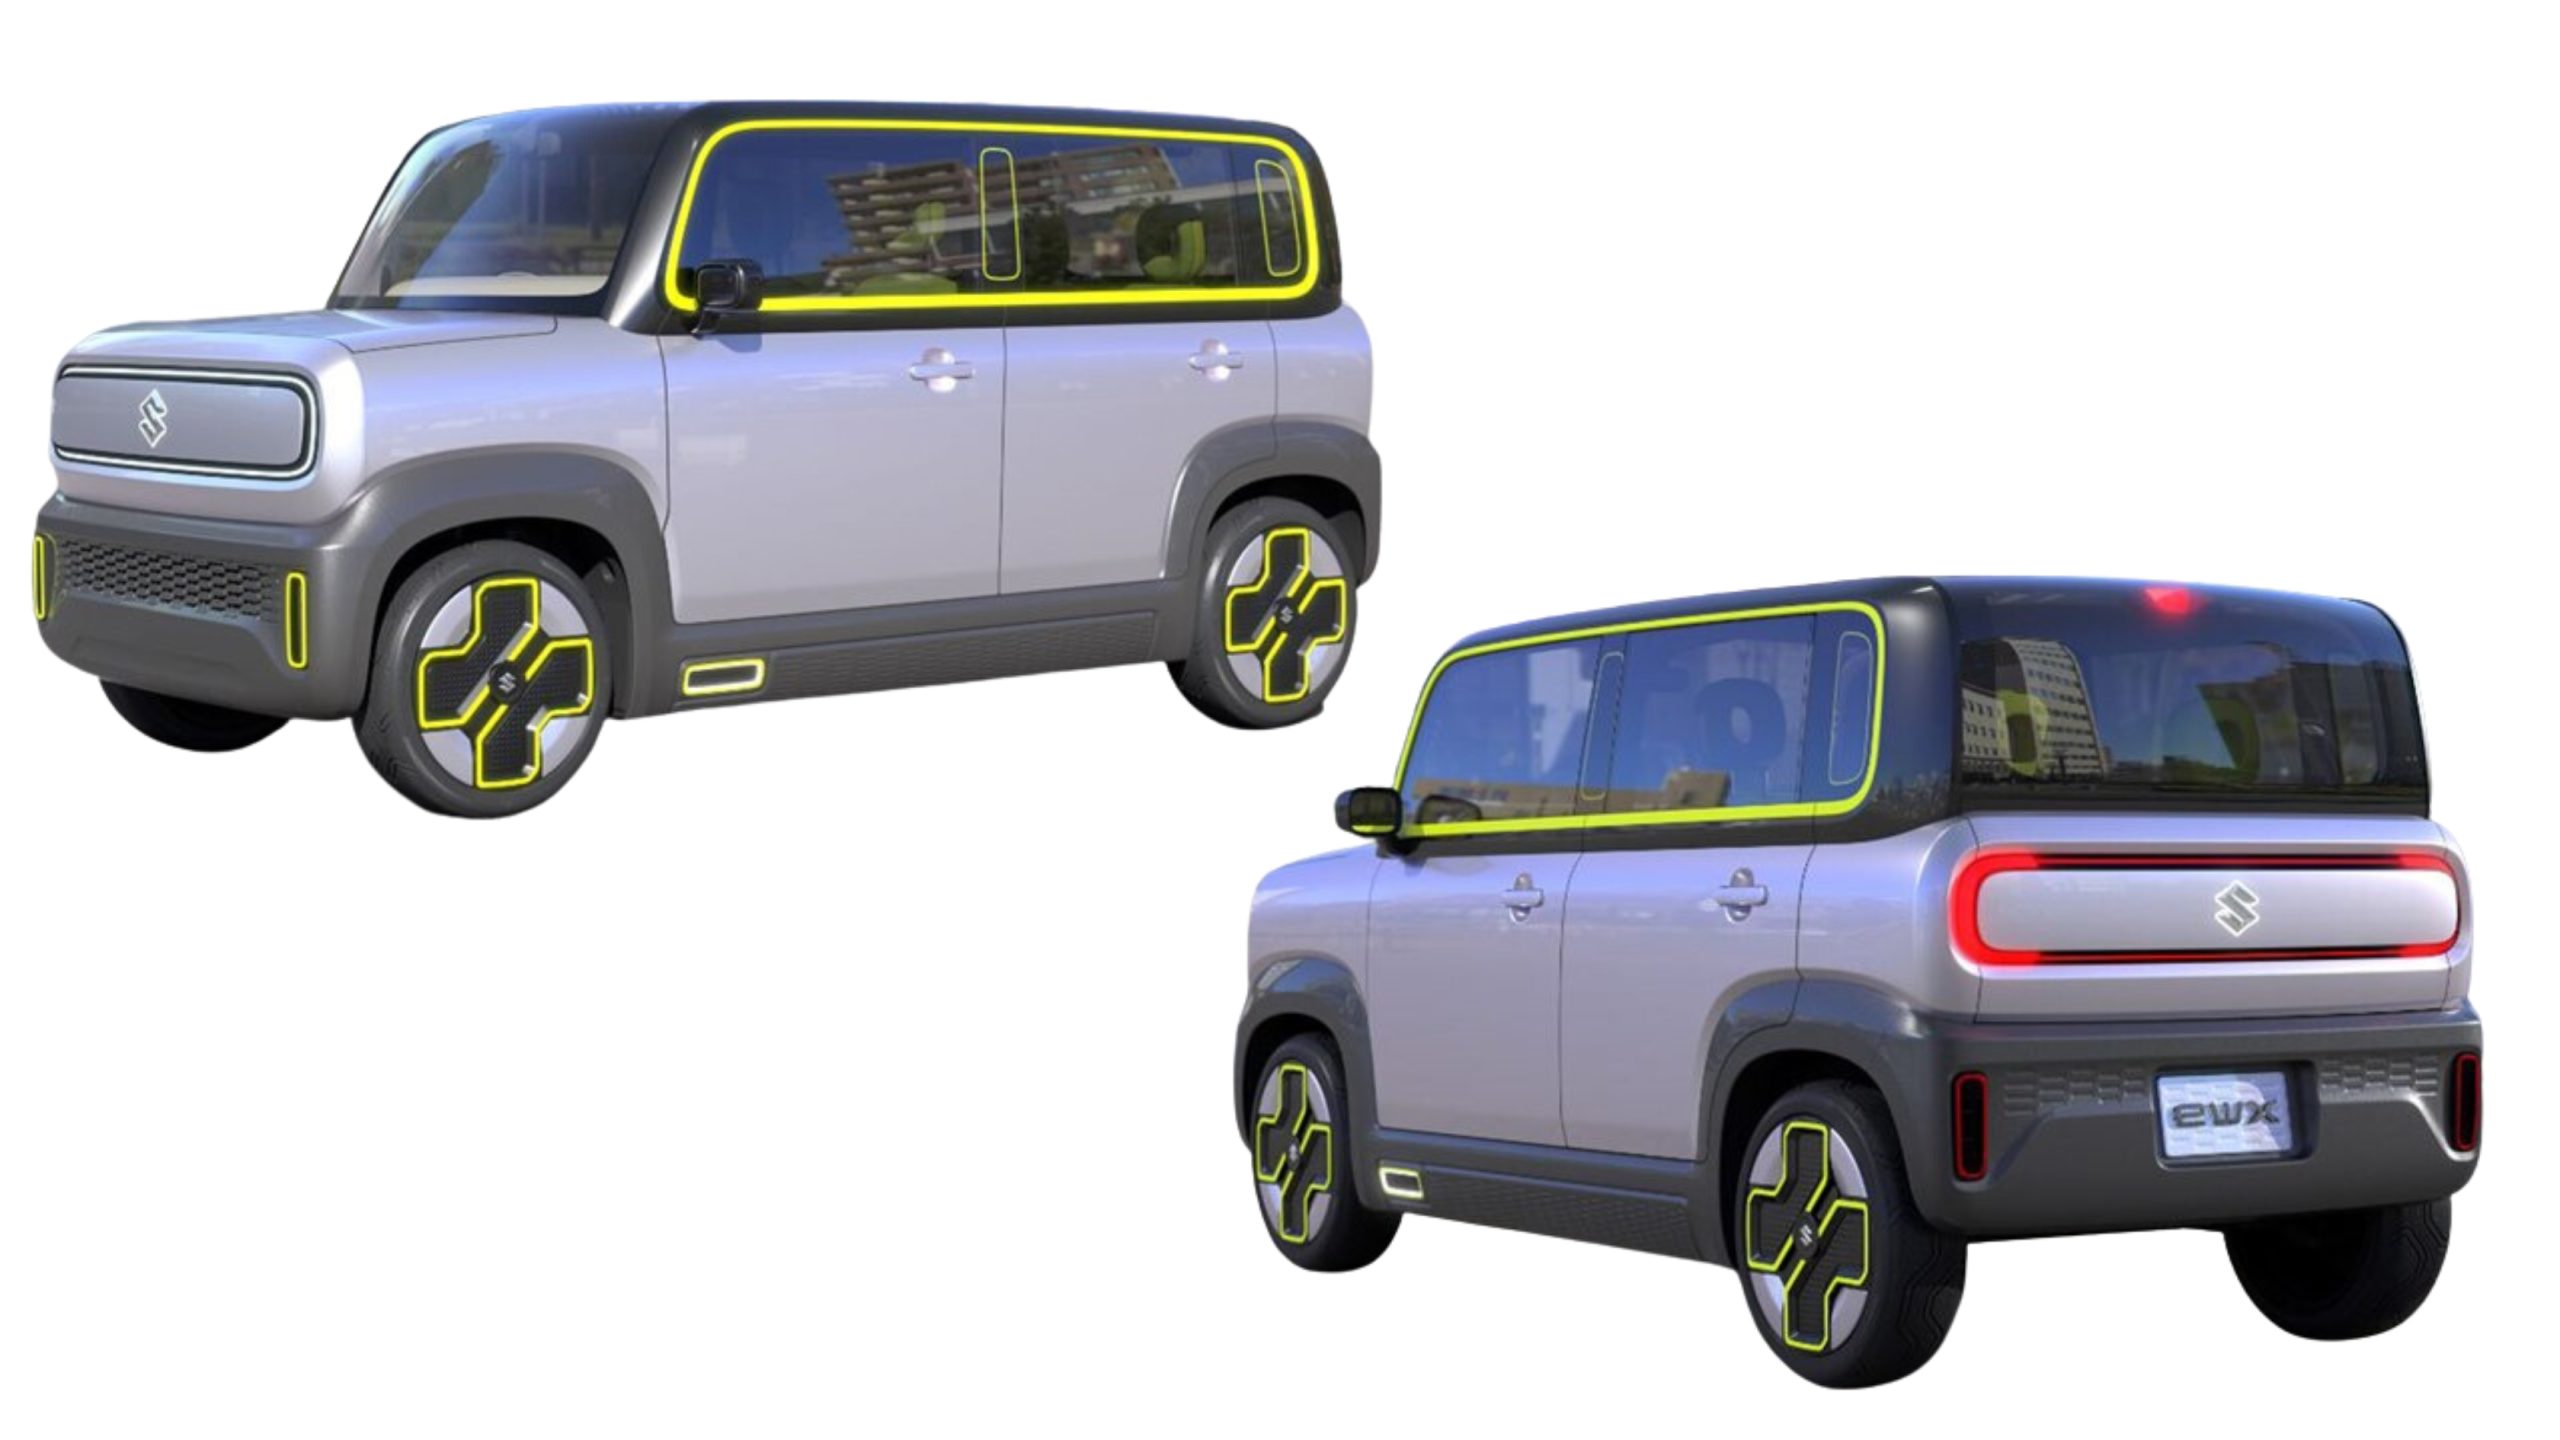 Suzuki eWX concept